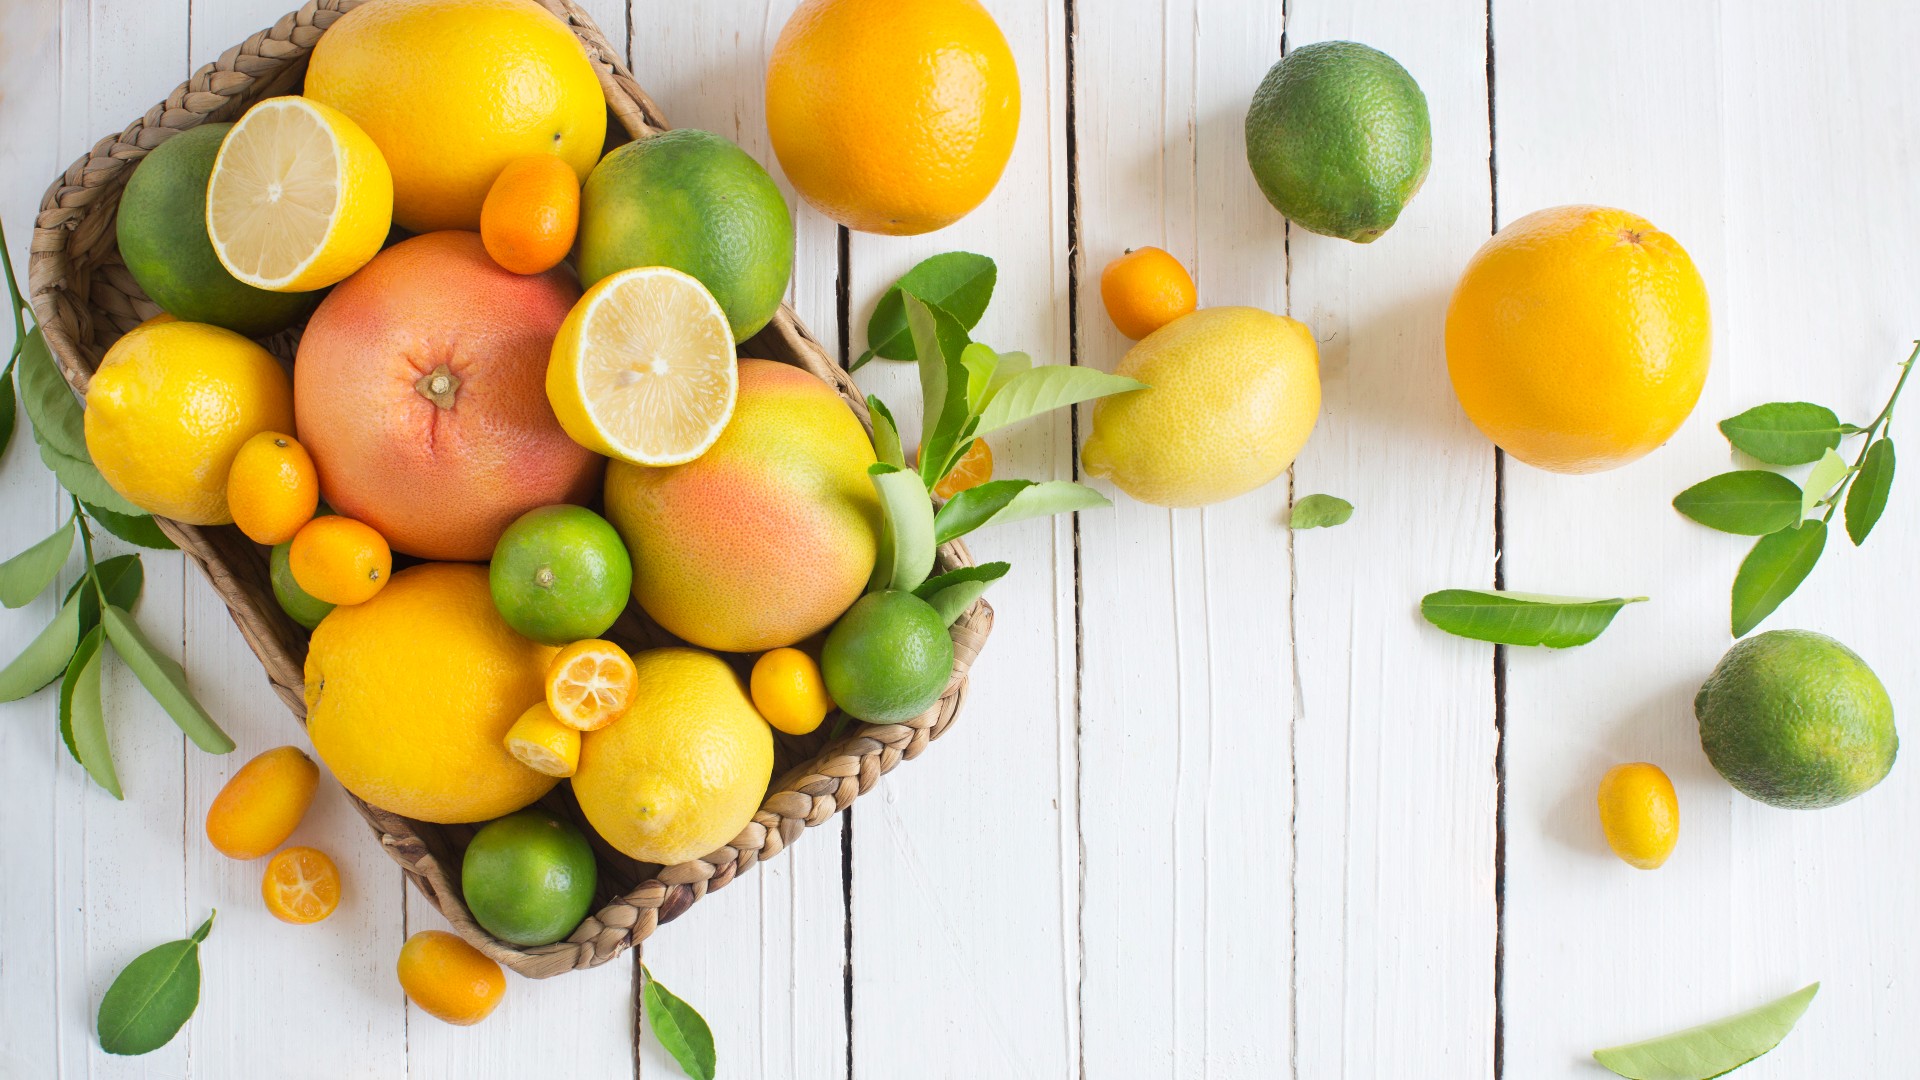 Fruits rich in vitamin C